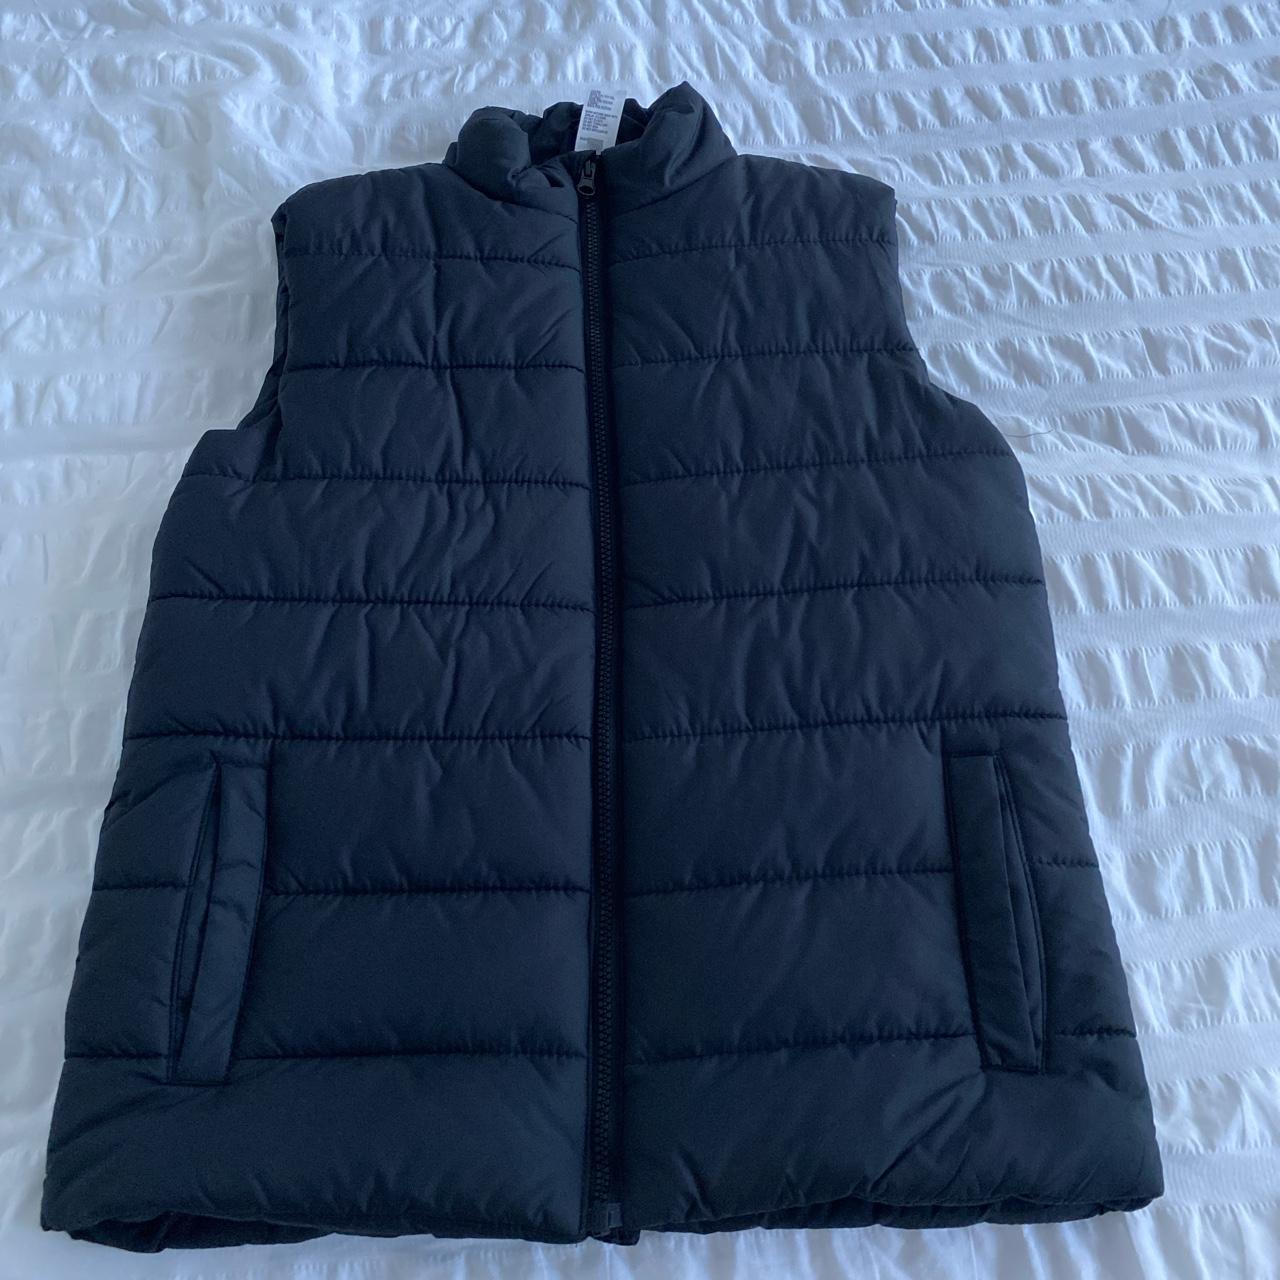 black Kmart puffer jacket vest Size 14 in kids could... - Depop